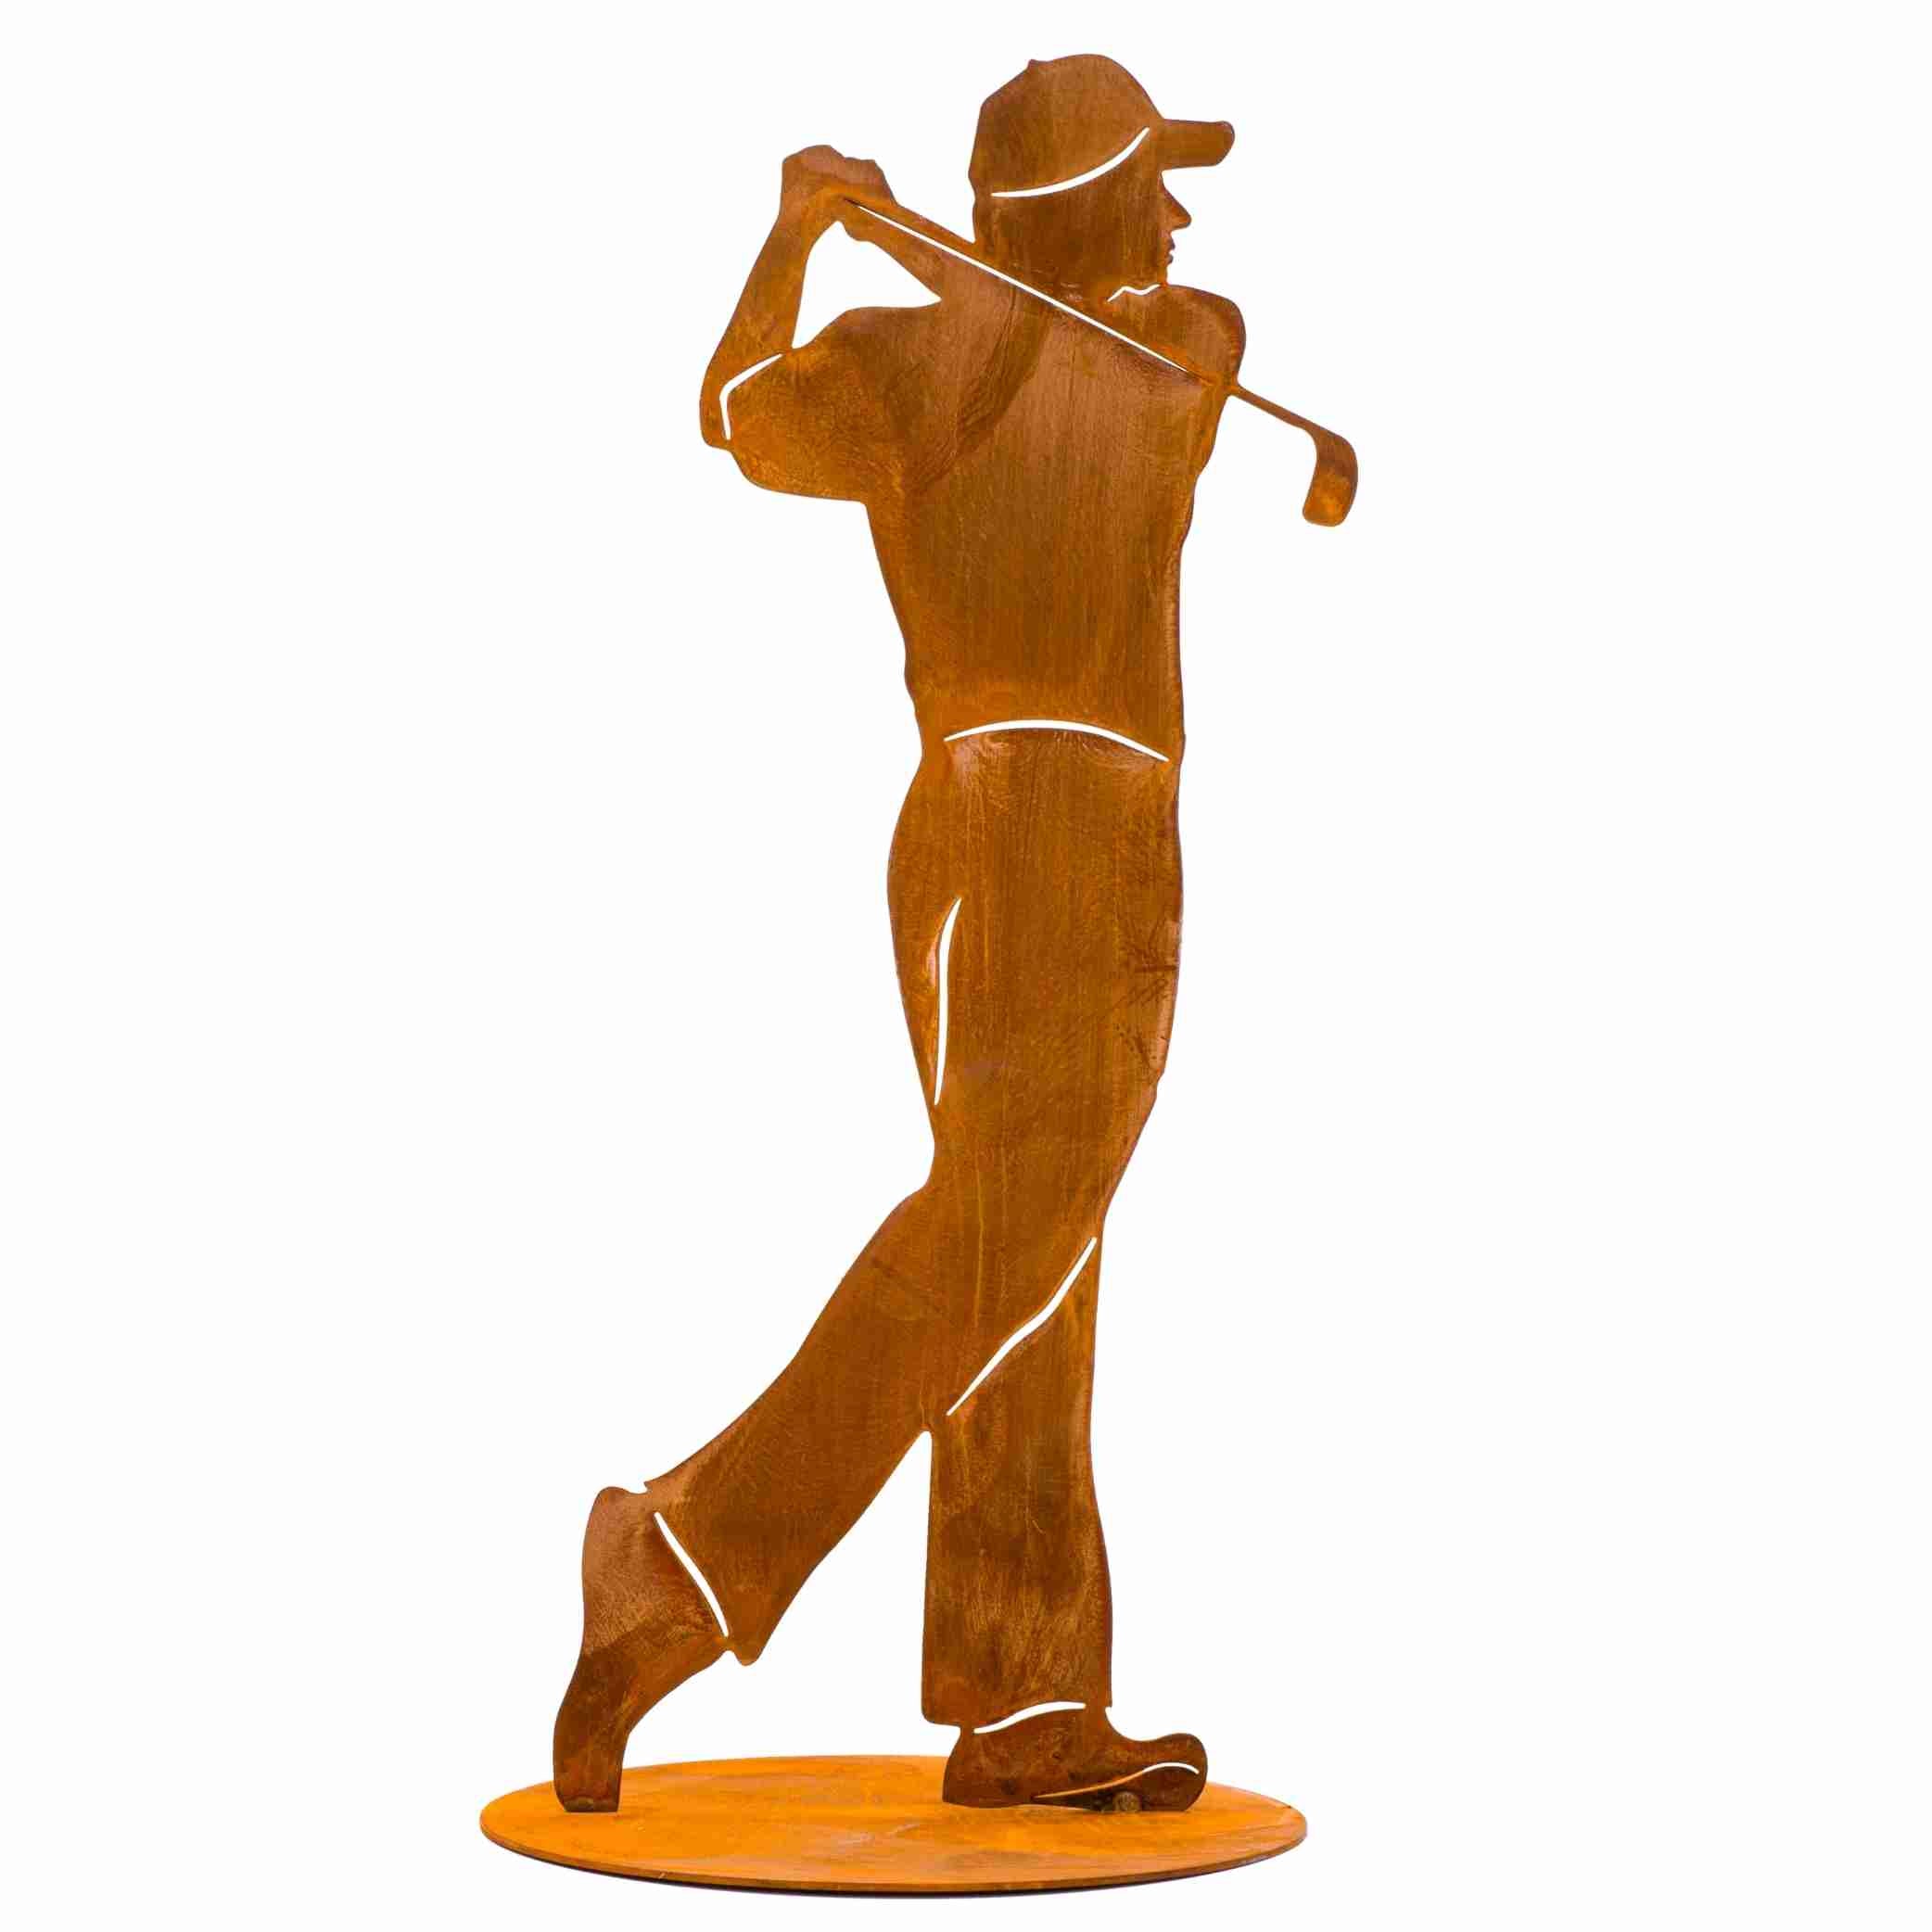  Wetterbeständige von Hand gefertigte Metallfigur eines Golfspielers als Pokal oder als außergewöhnliche Gartendekoration